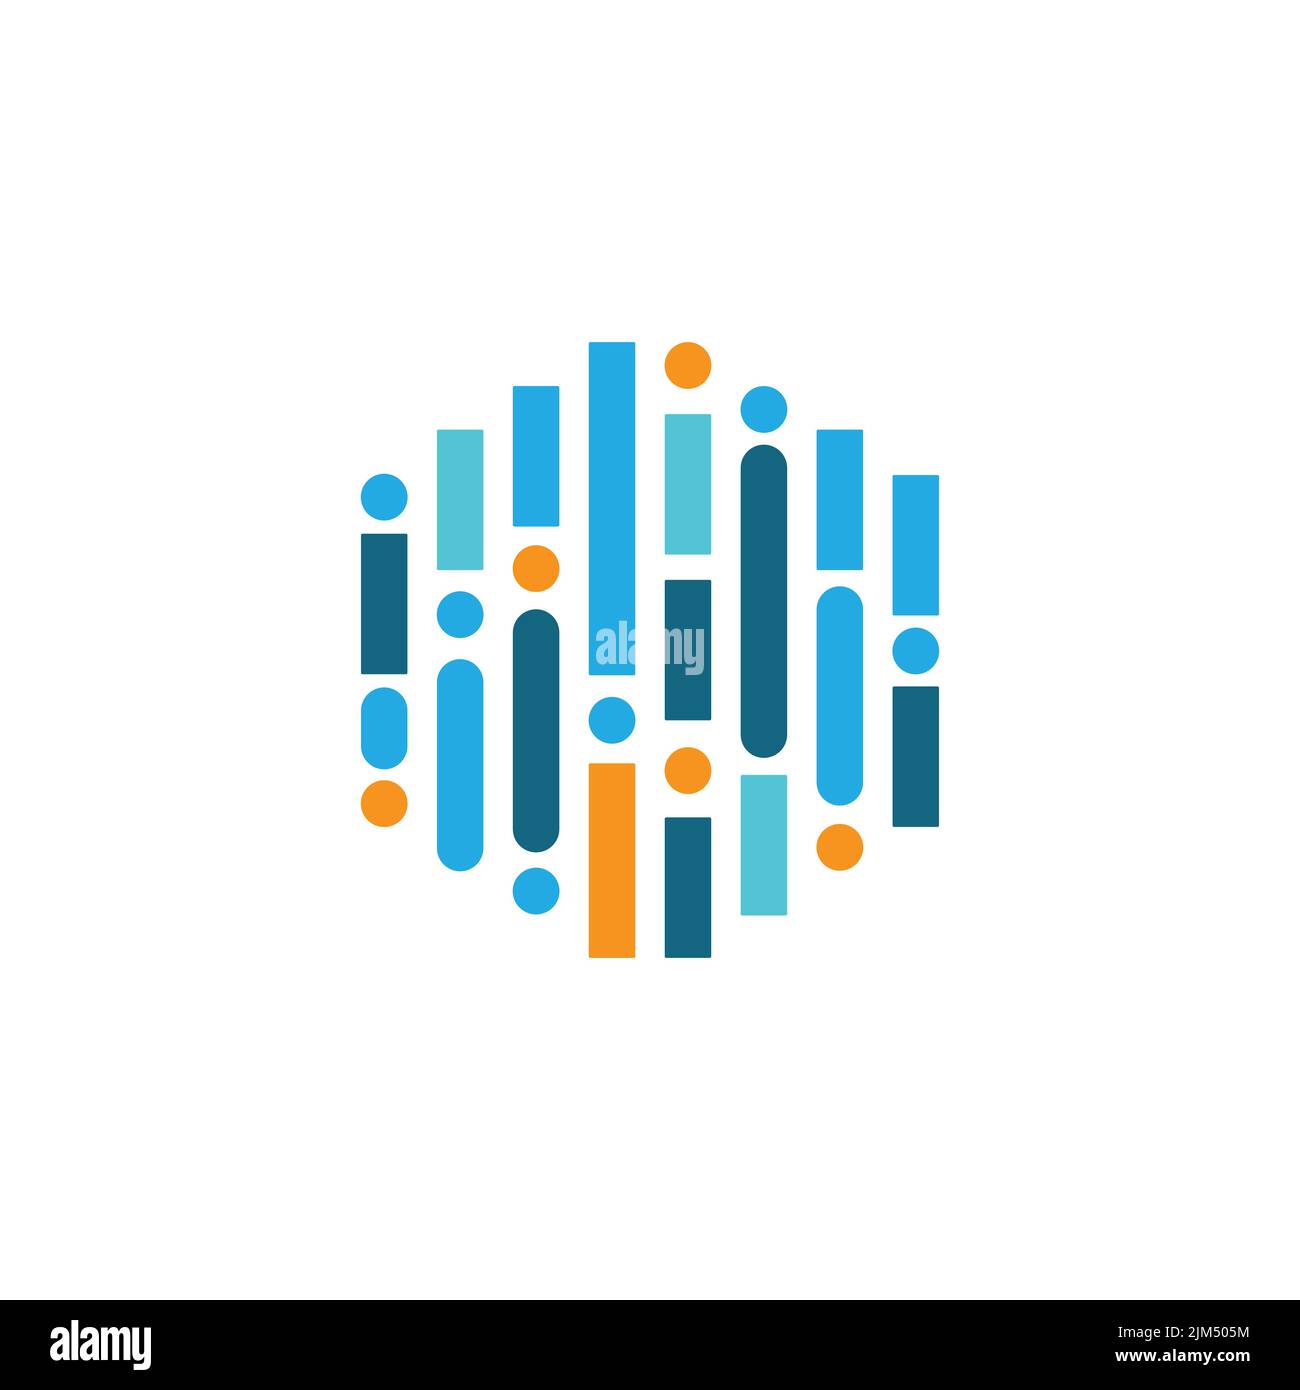 Logo de la technologie HEXAGON avec circuit de ligne. Image vectorielle de conception de logo hexagonal créatif Illustration de Vecteur